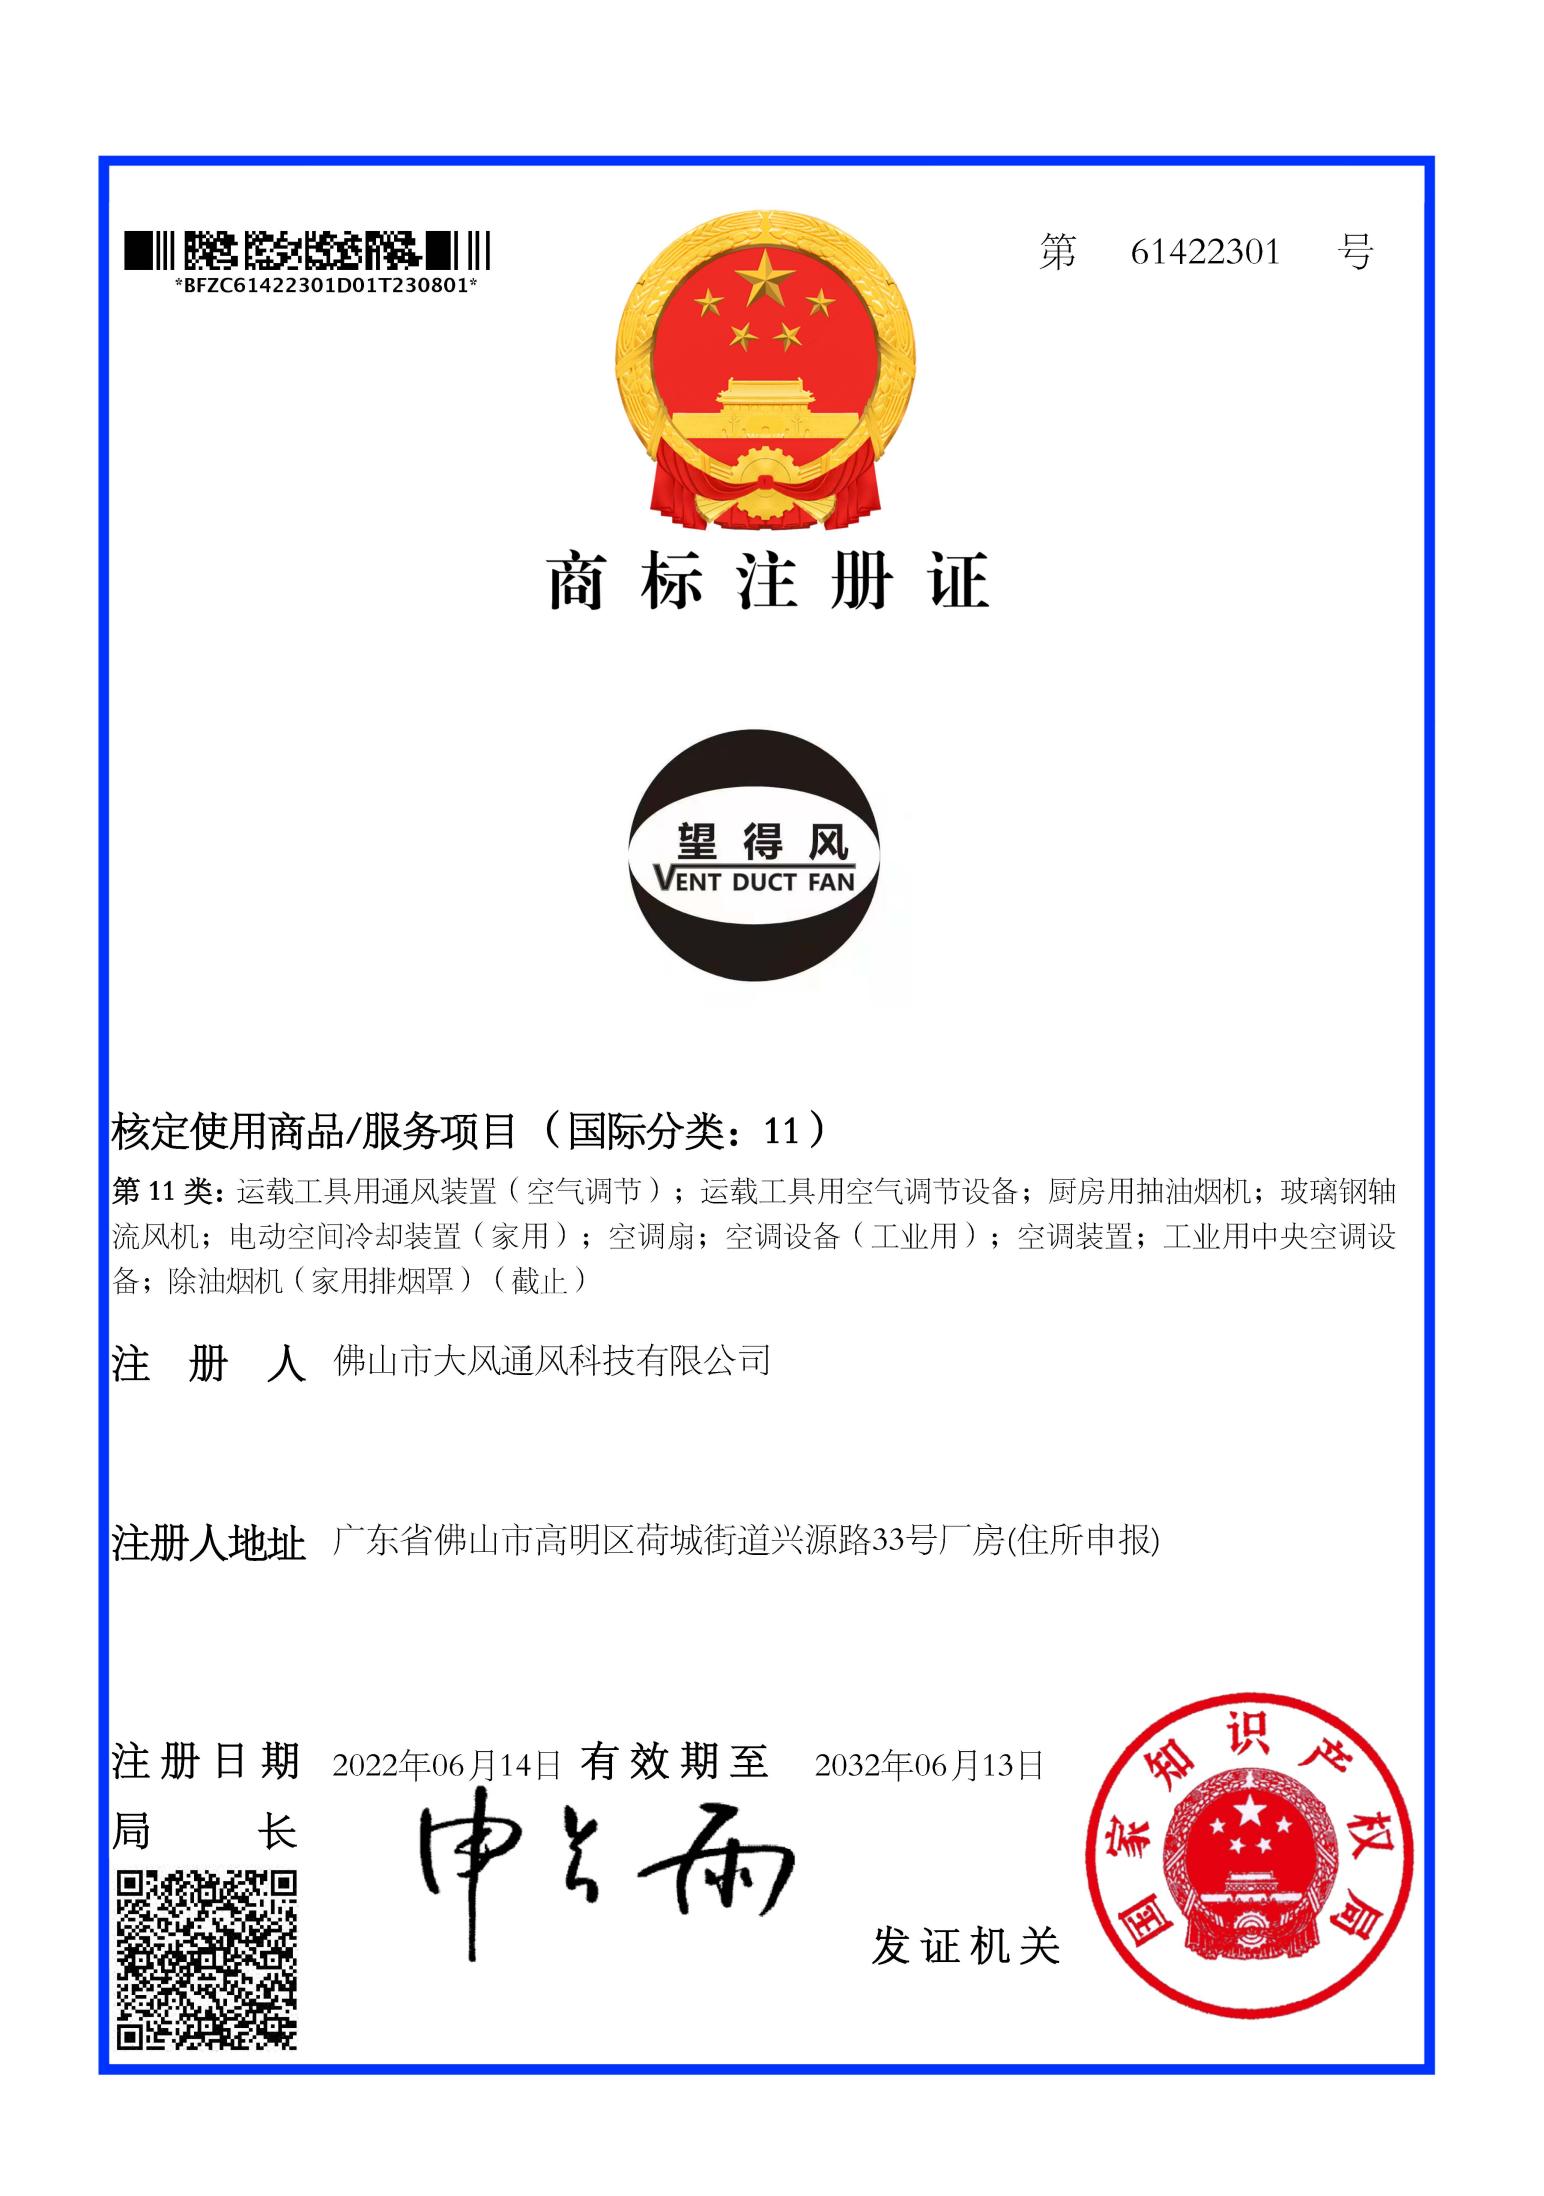 Trademark certificate 02